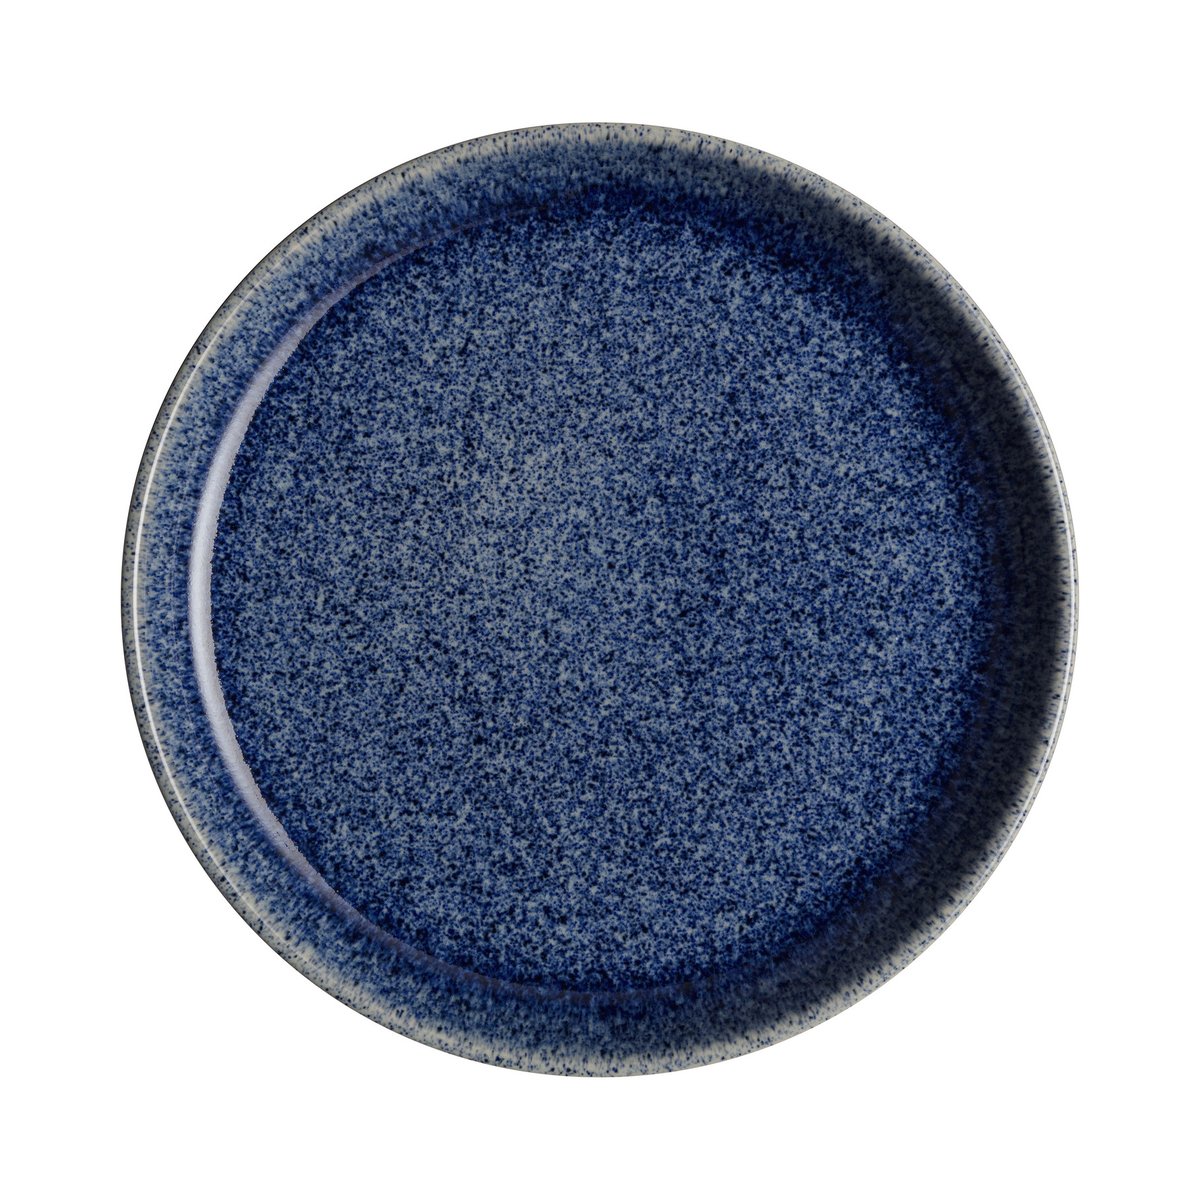 denby assiette studio blue coupe 21cm cobalt